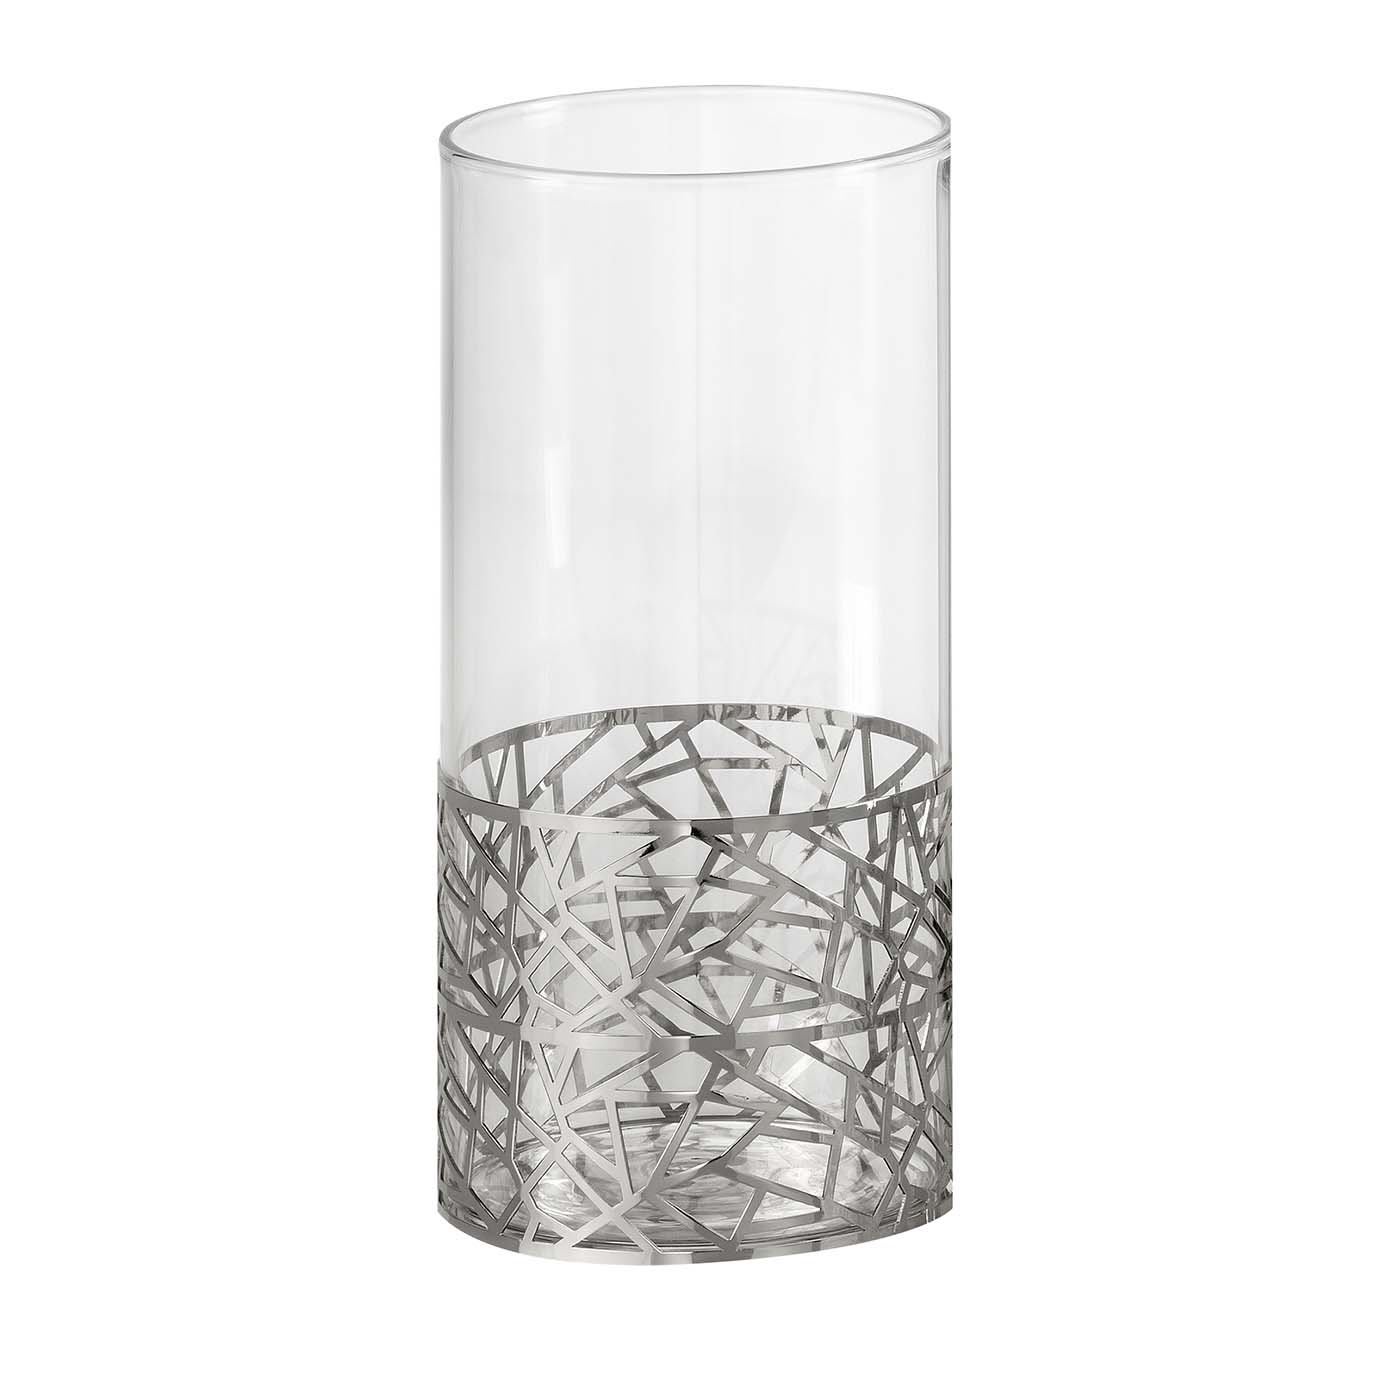 New York Chromed Vase - Villari Home Couture